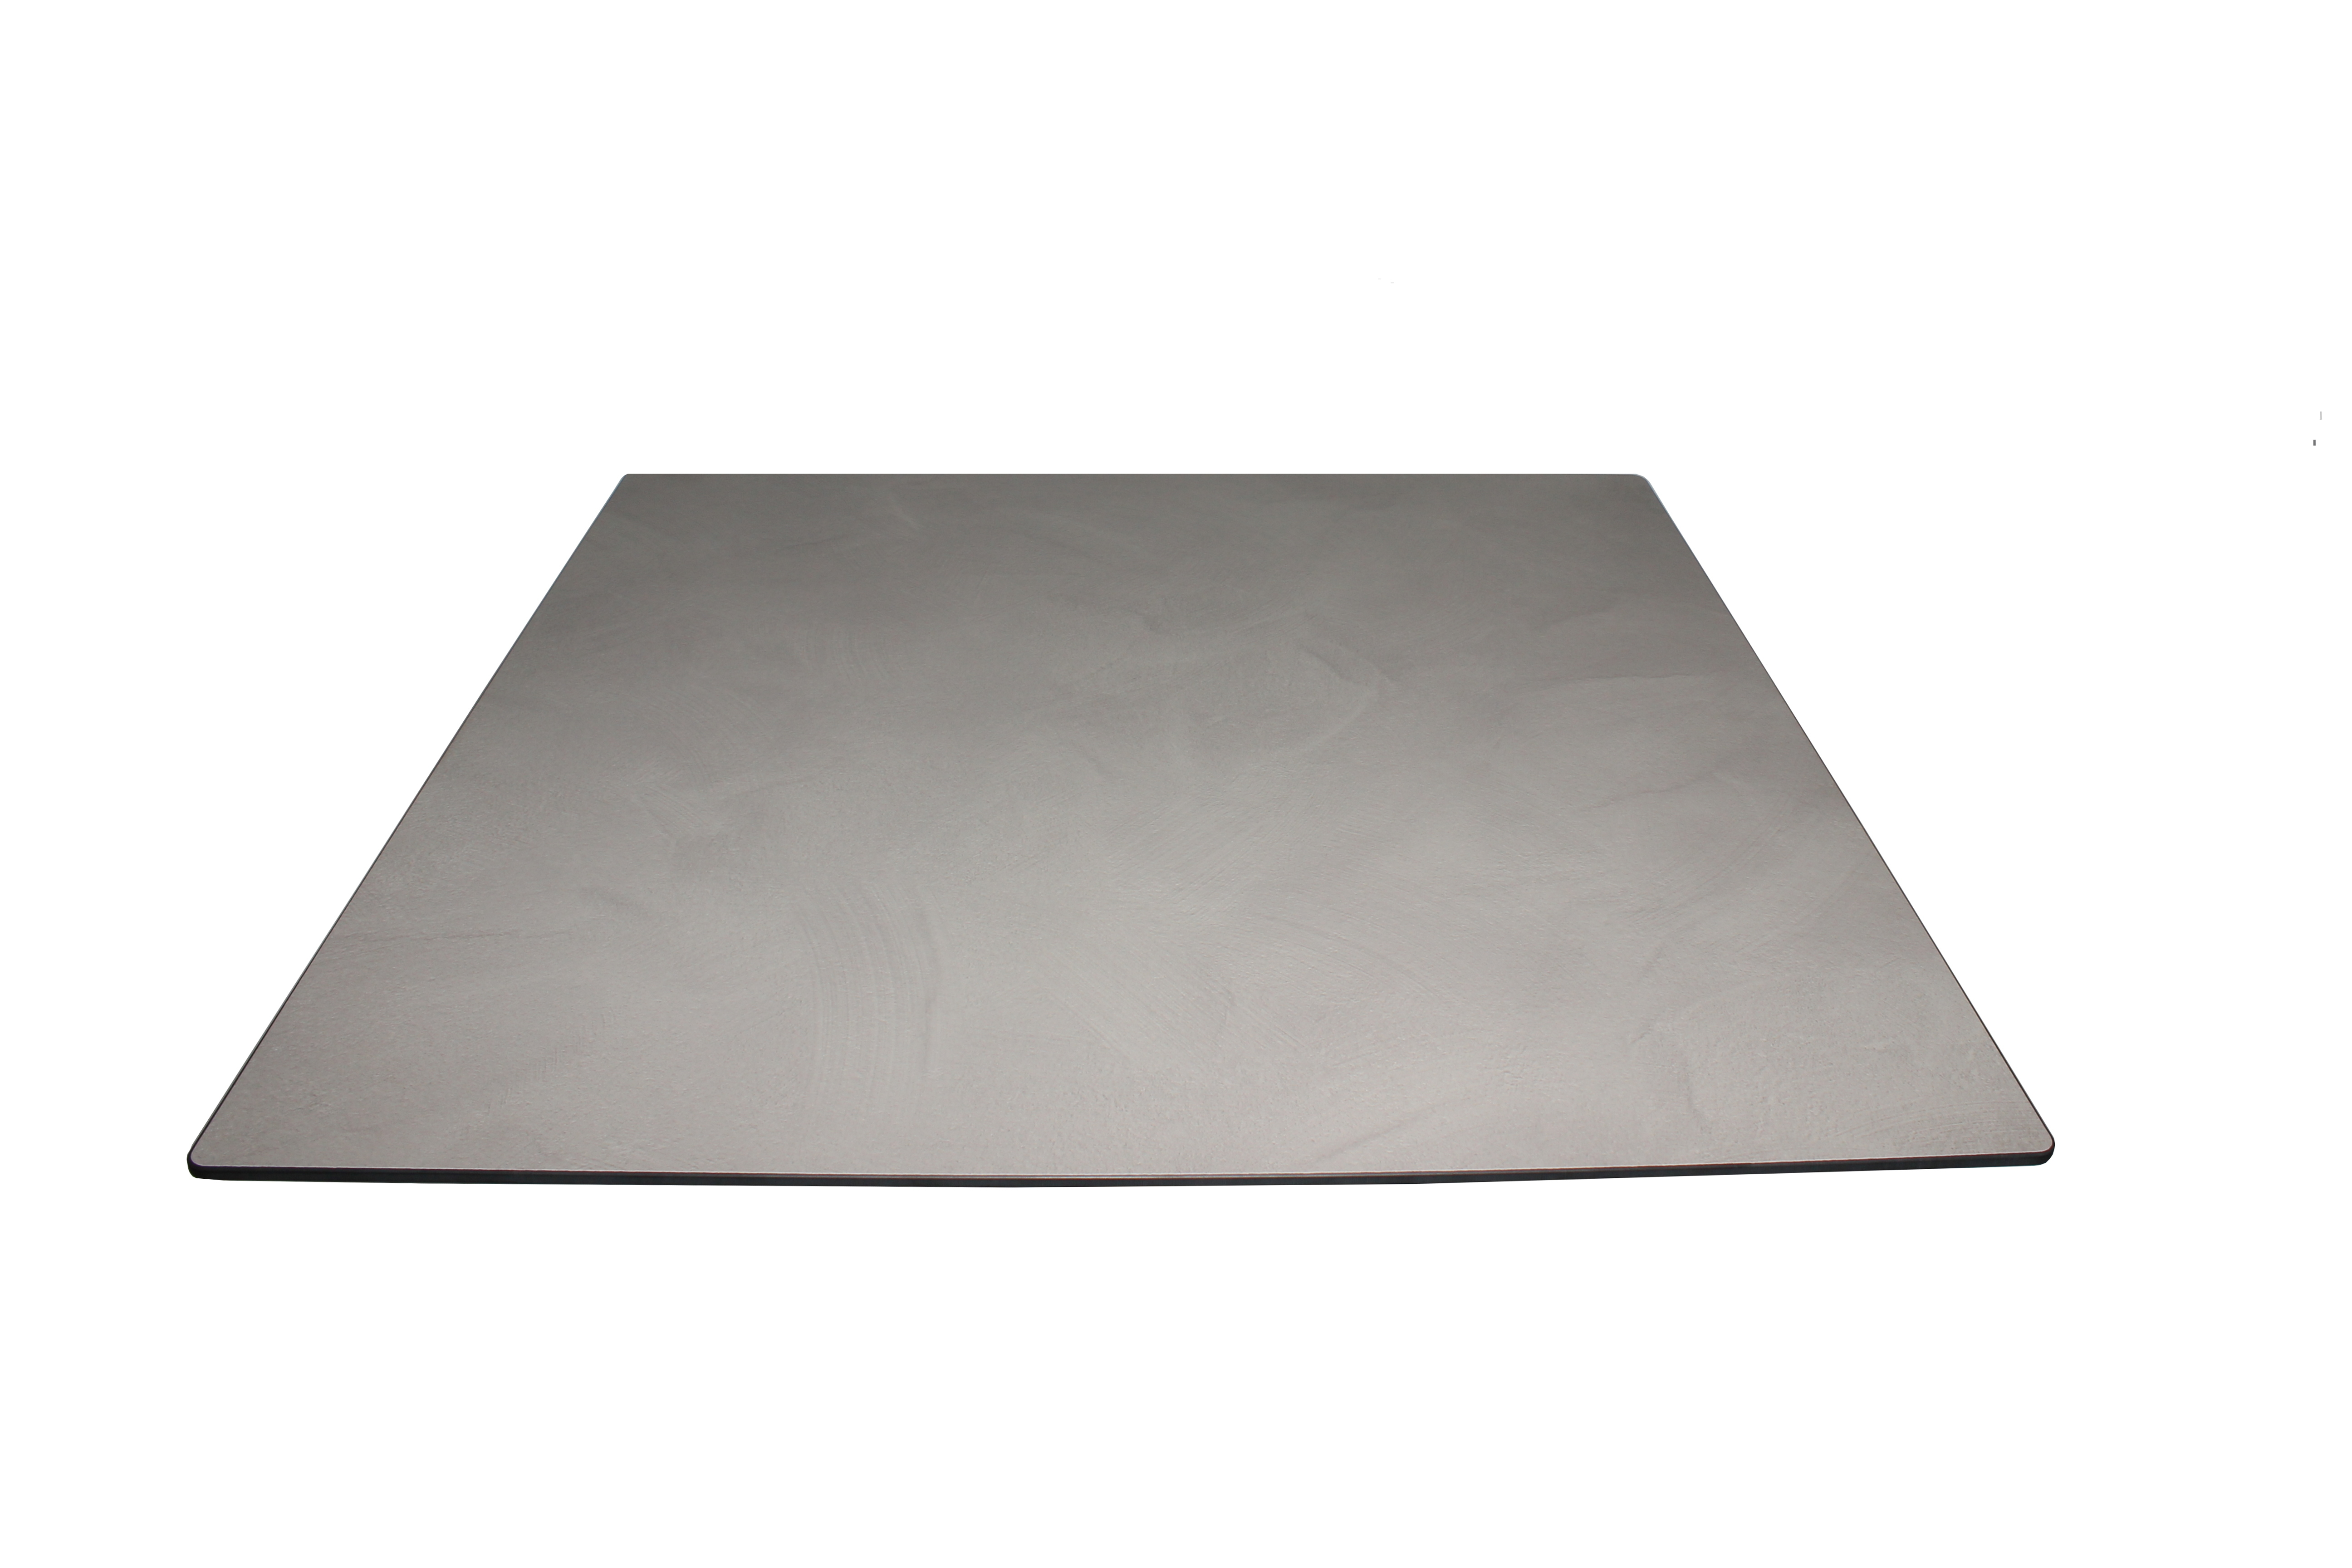 Tisch VISION mit einer HPL-Kompakt-Tischplatte - Industrial-Design Betonoptik grau (Cement), 69 x 69 cm